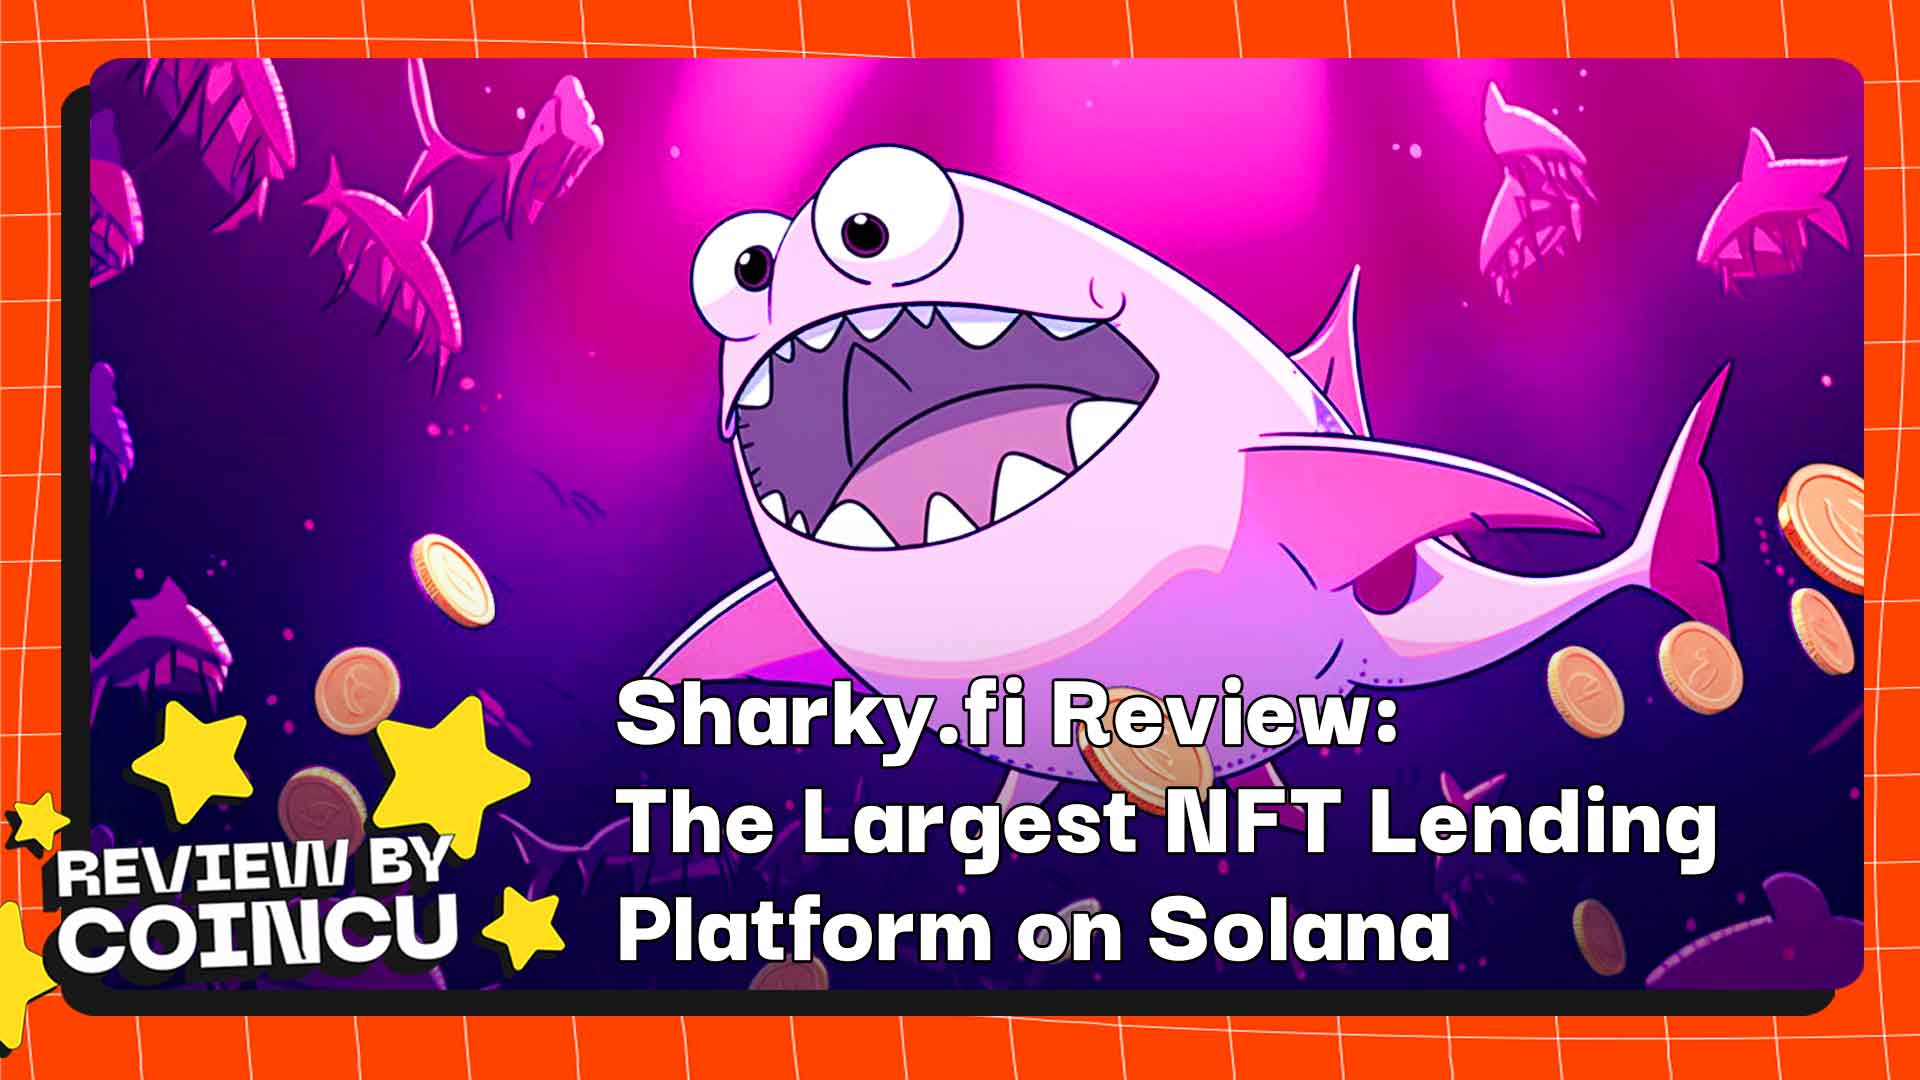 Sharky.fi 리뷰: 솔라나 최대 NFT 대출 플랫폼